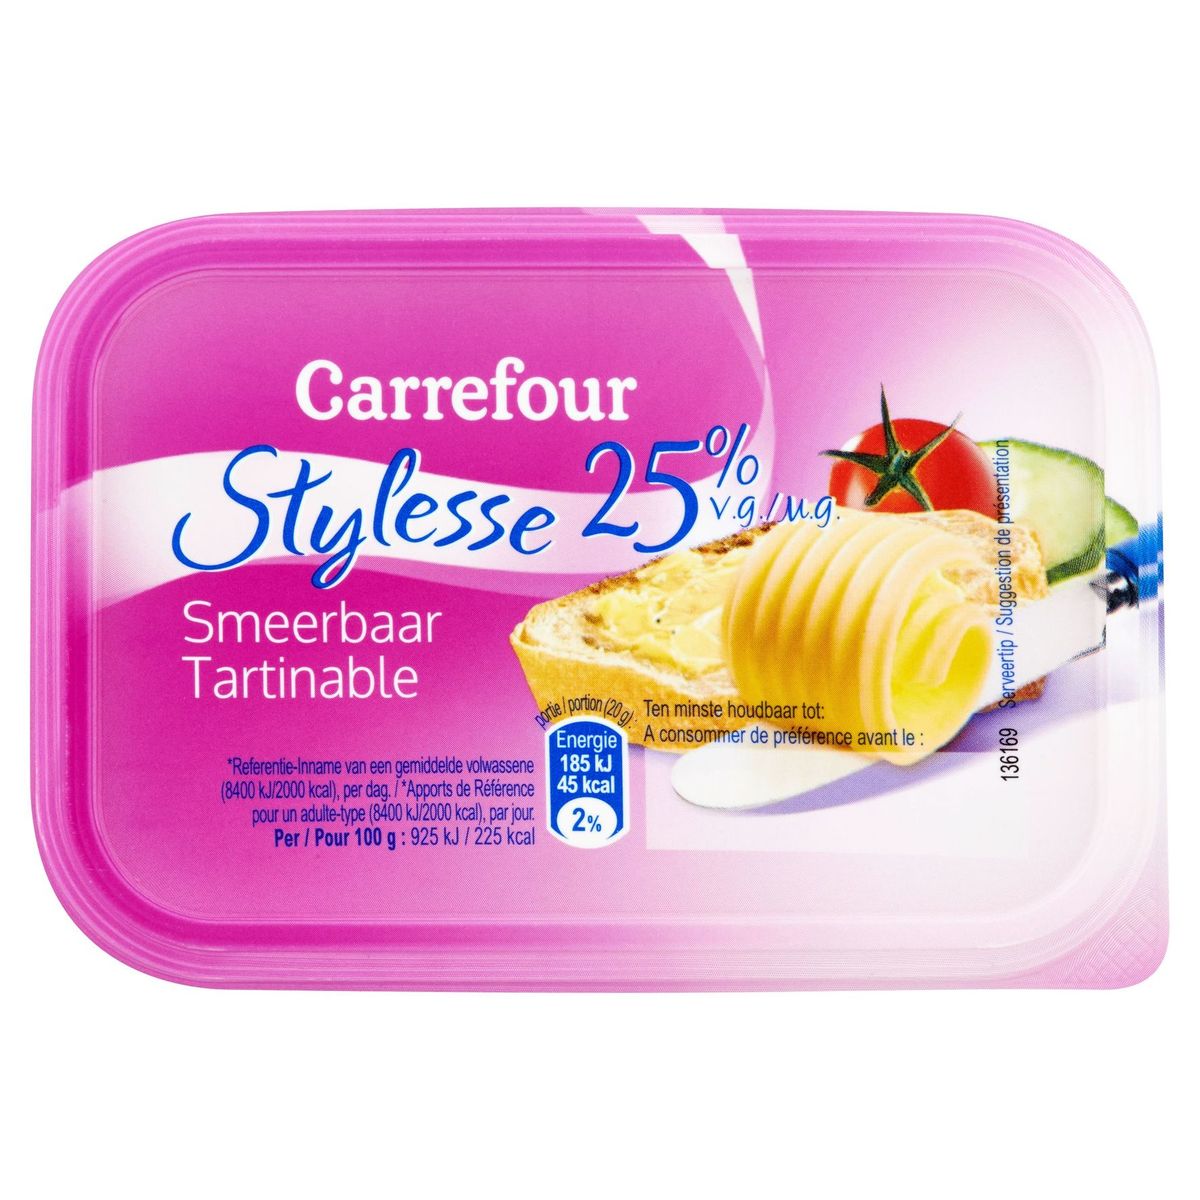 Carrefour Stylesse 25% V.G. Smeerbaar 250 g